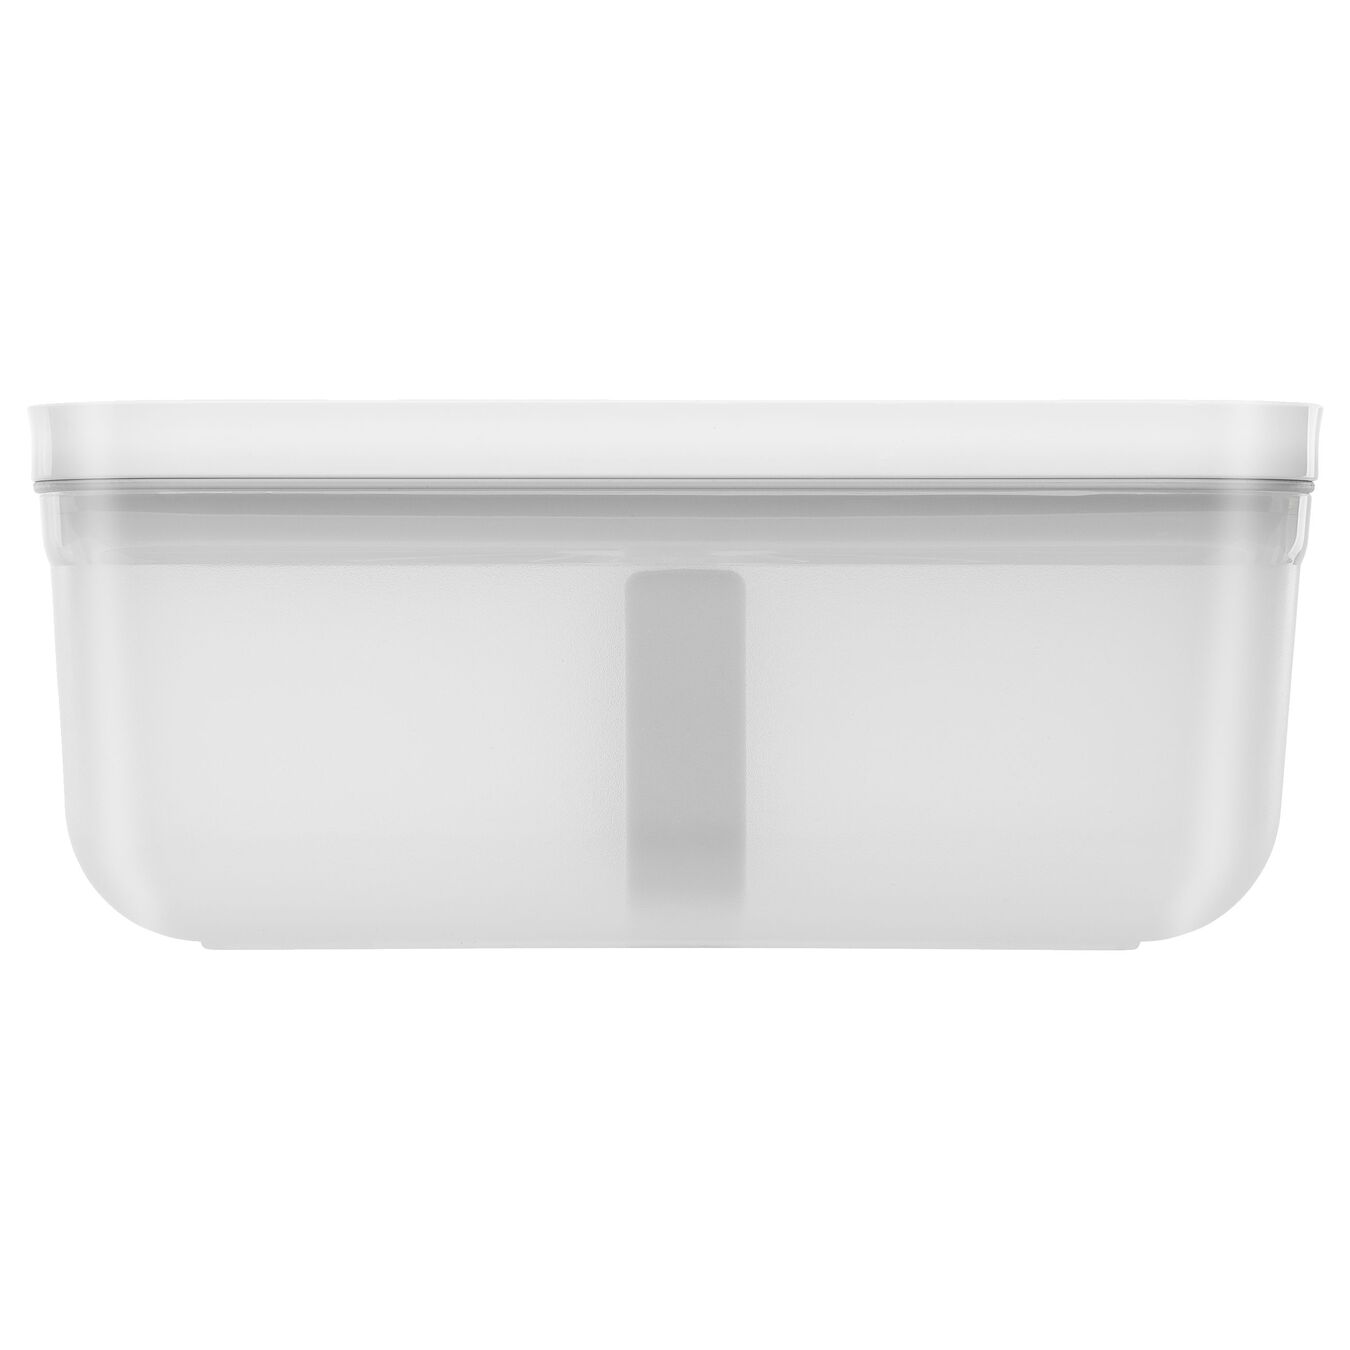 Lunch box sottovuoto L, plastica, semi transparente-grigio,,large 3